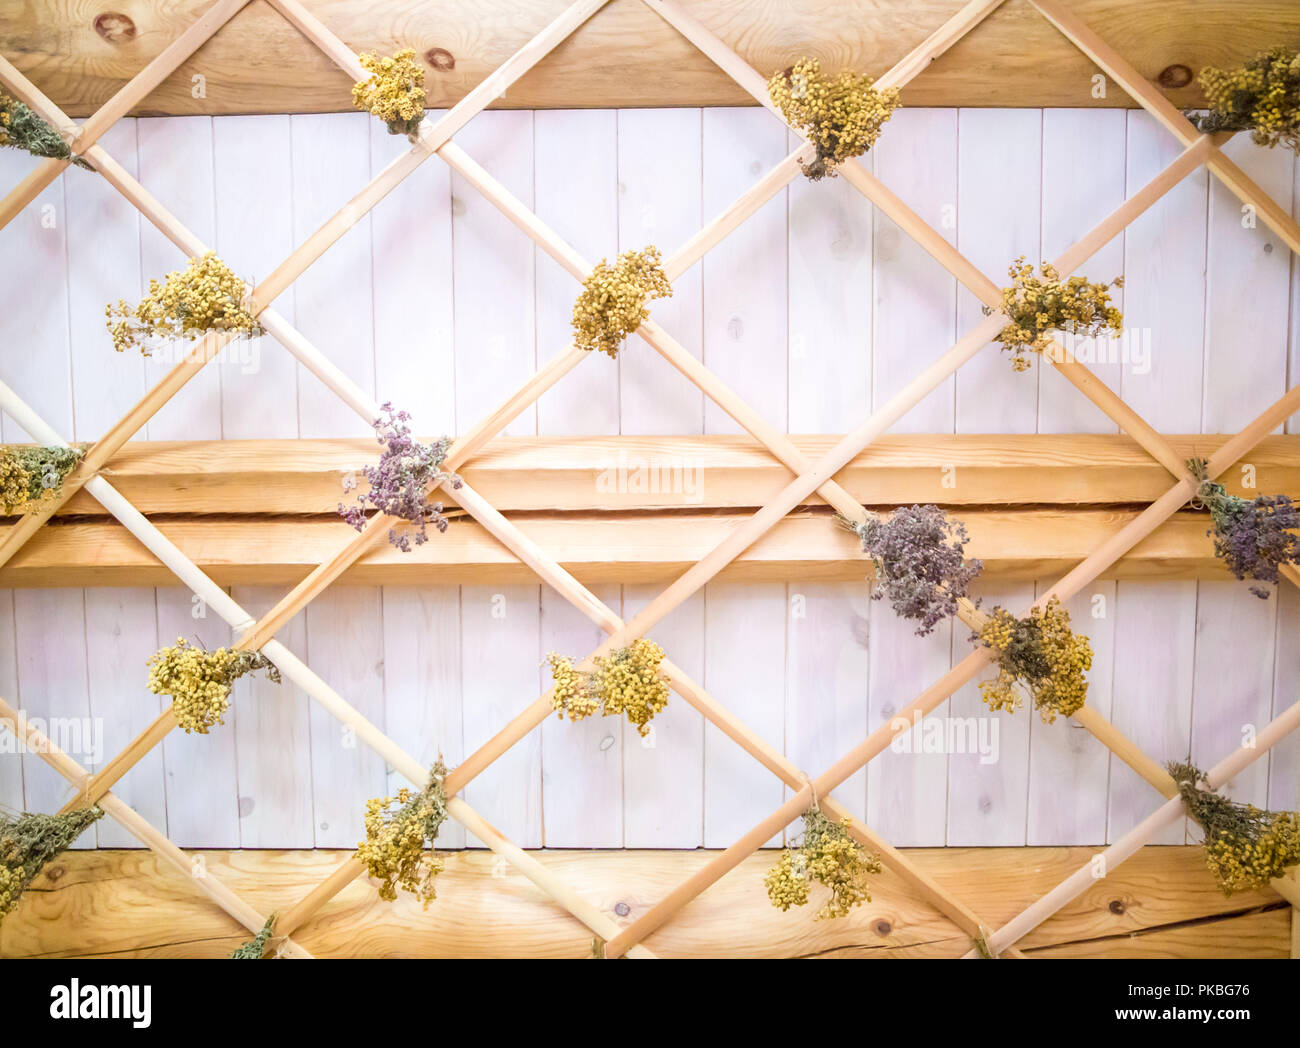 Arrière-plan avec plafond dans un sauna. aroma fleurs et de bien-être se détendre dans une atmosphère romantique. texture. abstract Banque D'Images